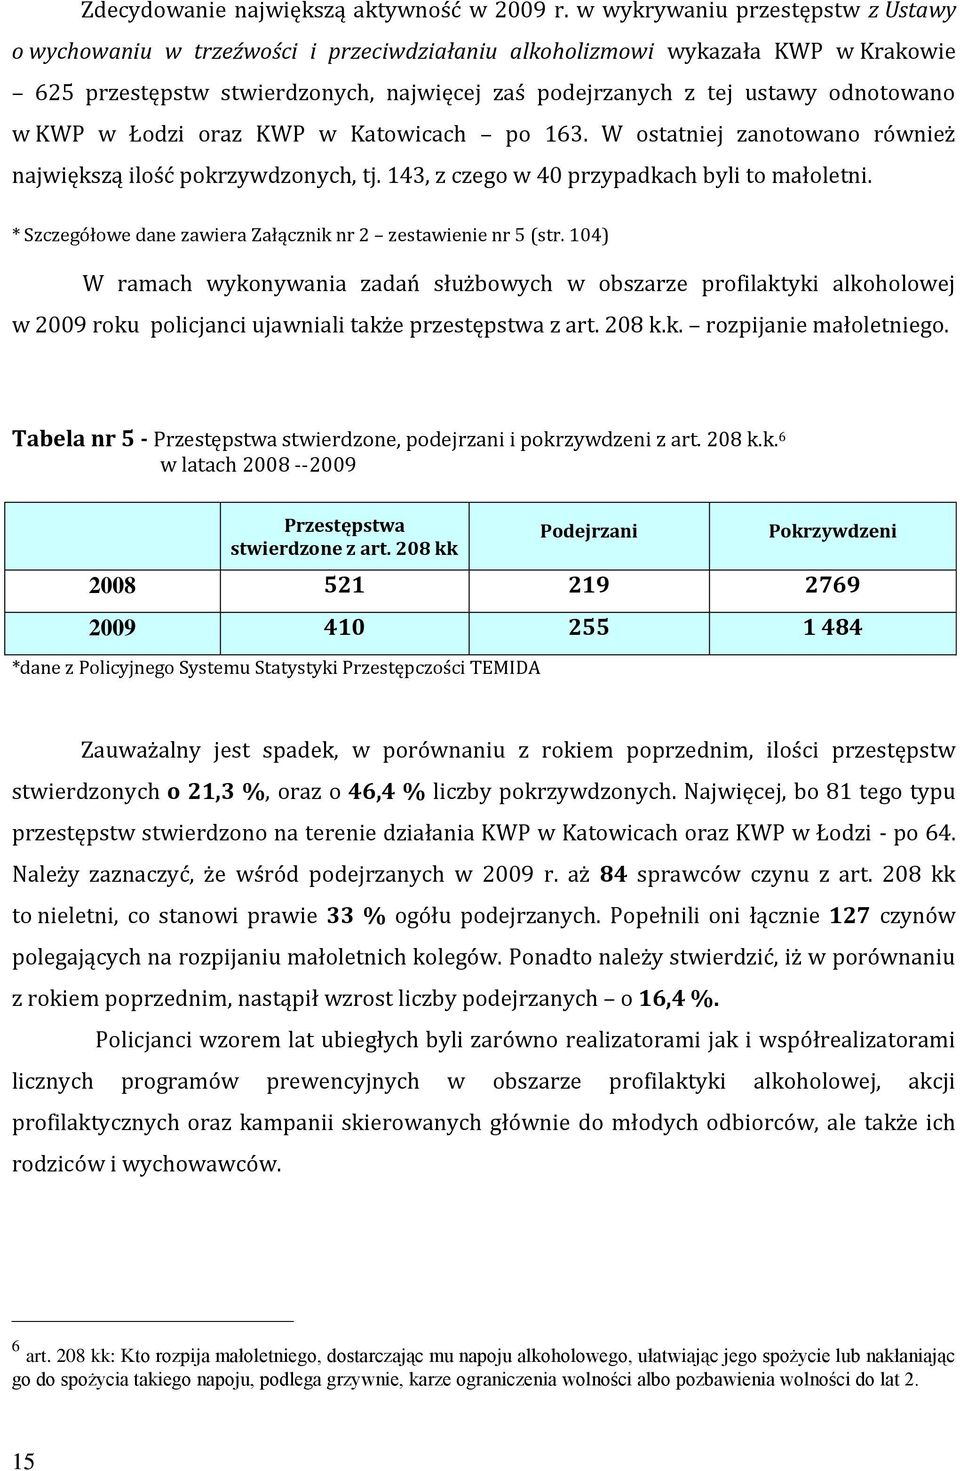 w KWP w Łodzi oraz KWP w Katowicach po 163. W ostatniej zanotowano również największą ilość pokrzywdzonych, tj. 143, z czego w 40 przypadkach byli to małoletni.